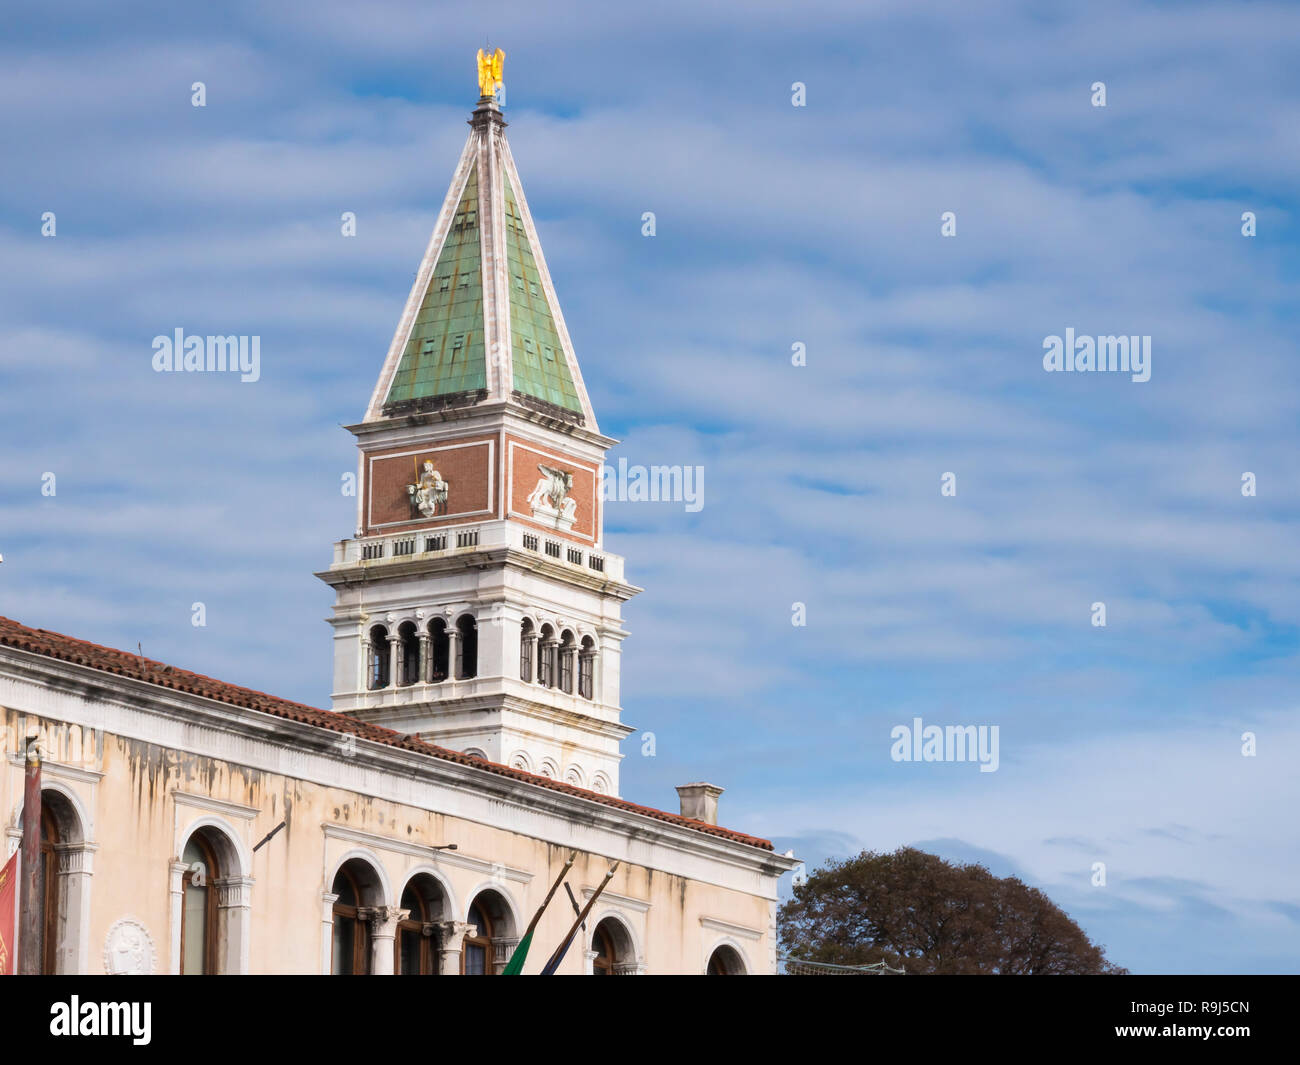 Venecia, Italia, 1 de nov de 2018: San Marcos o la Plaza de San Marcos o de la Piazza y Bell o torre de observación. Perspectiva hermosa vista vertical. Día de verano. Foto de stock